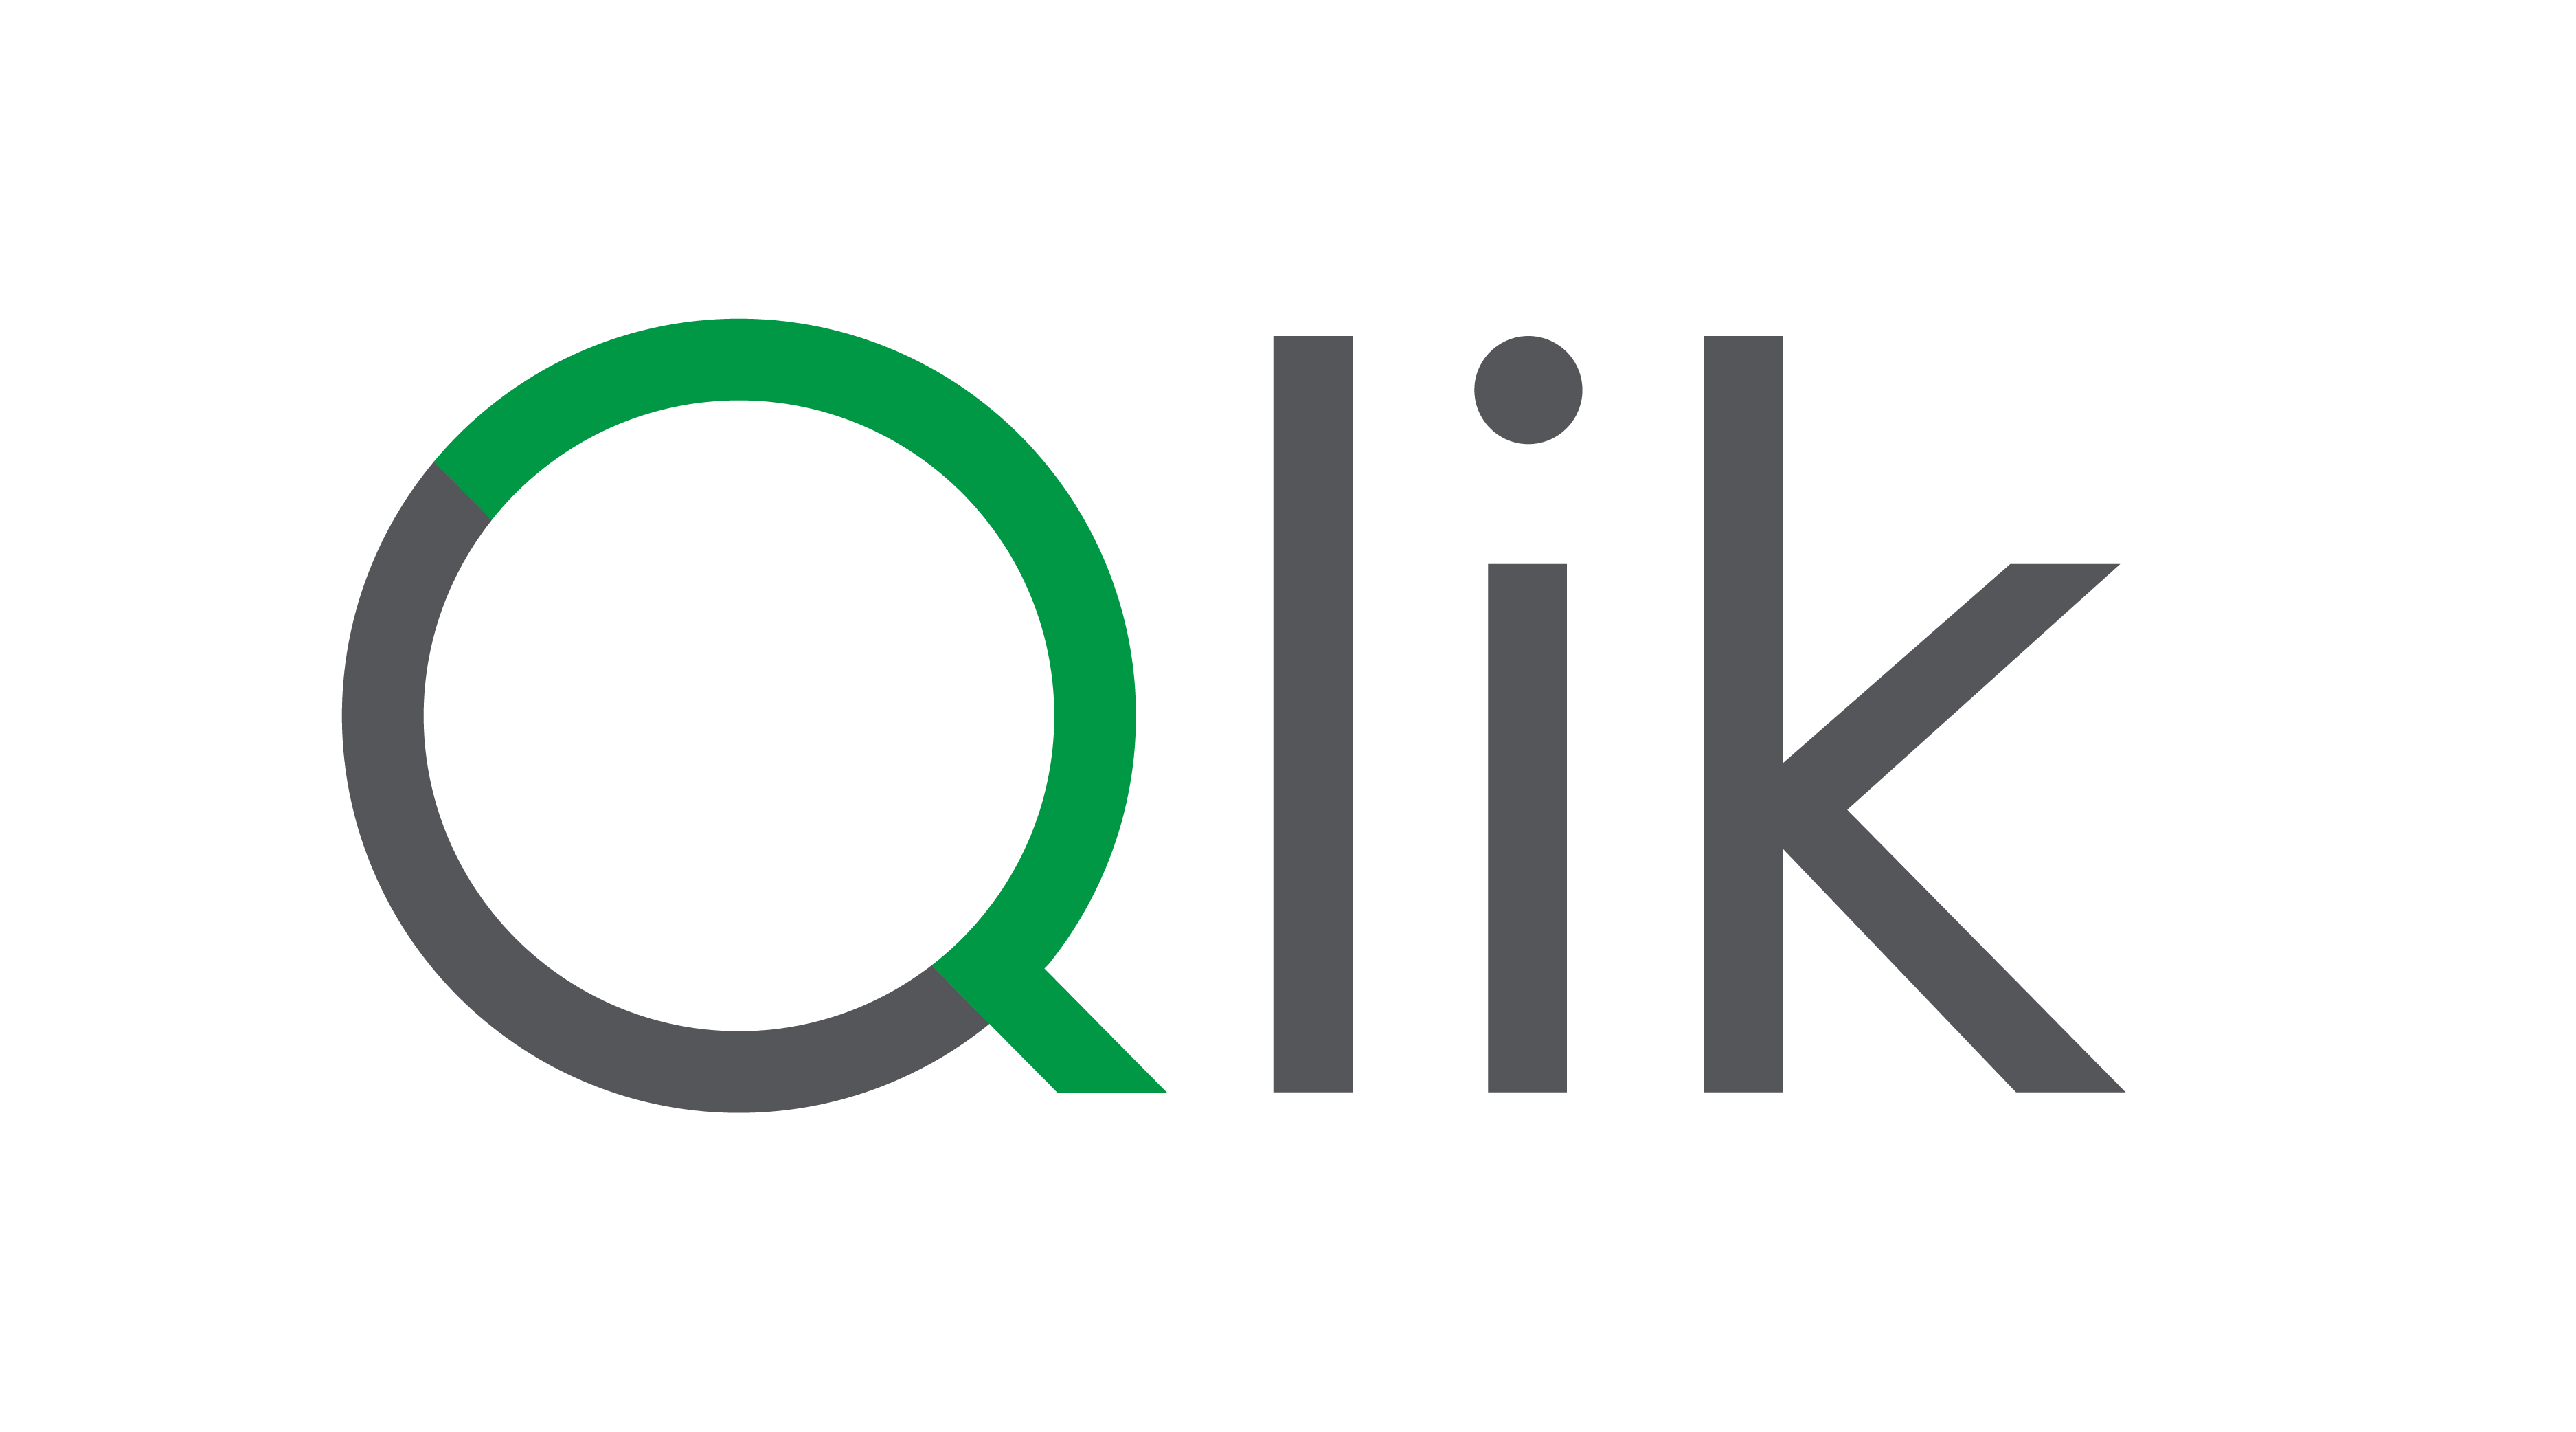 Qlik Connect 2024の豪華ラインナップが
データとAIの未来を描く – Net24